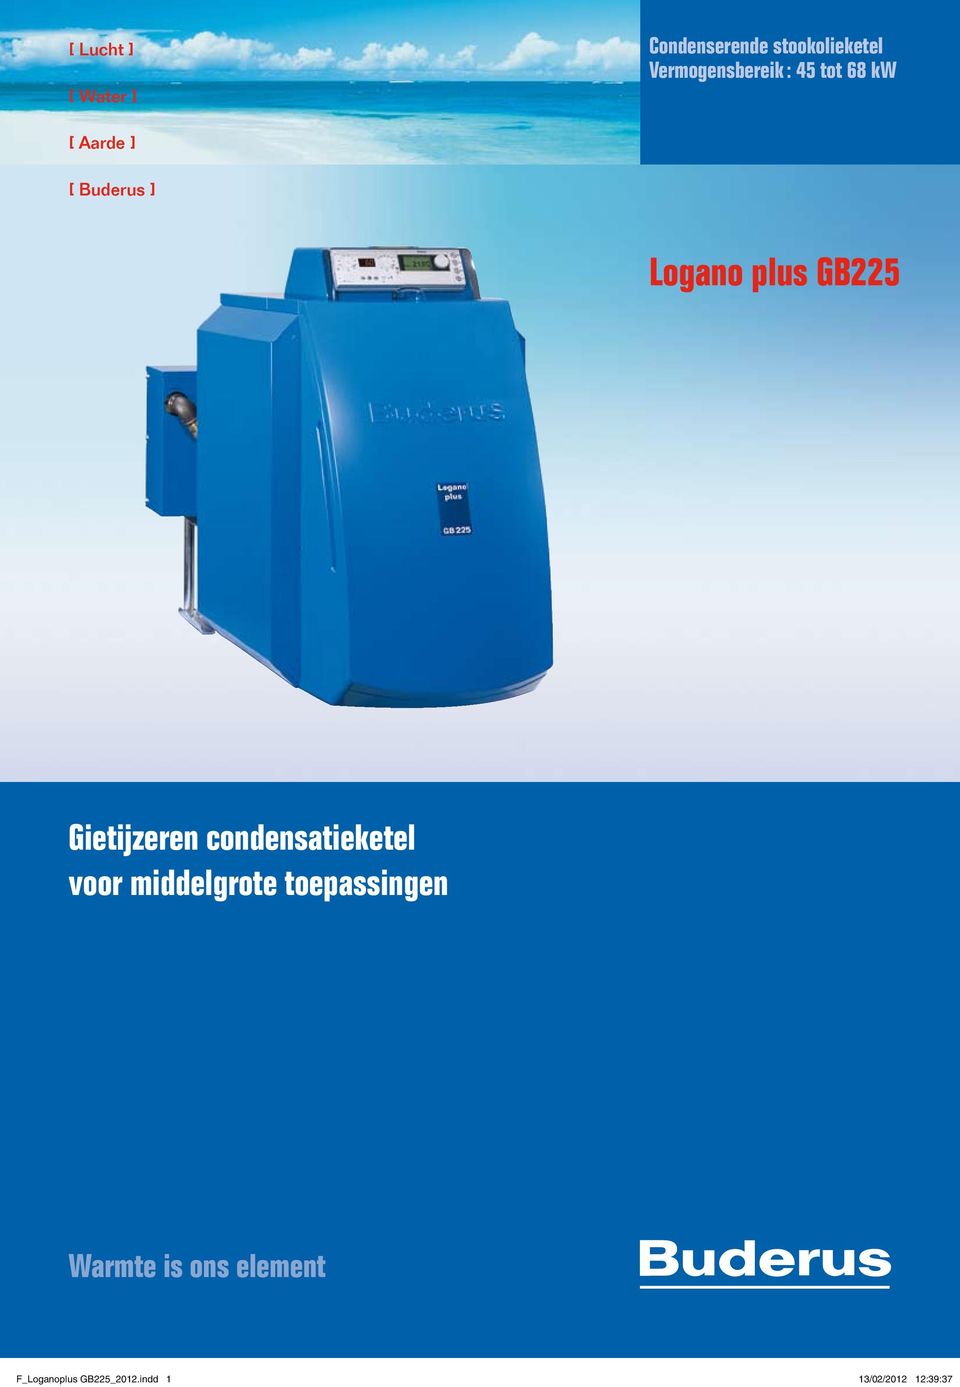 plus GB225 Gietijzeren condensatieketel voor middelgrote